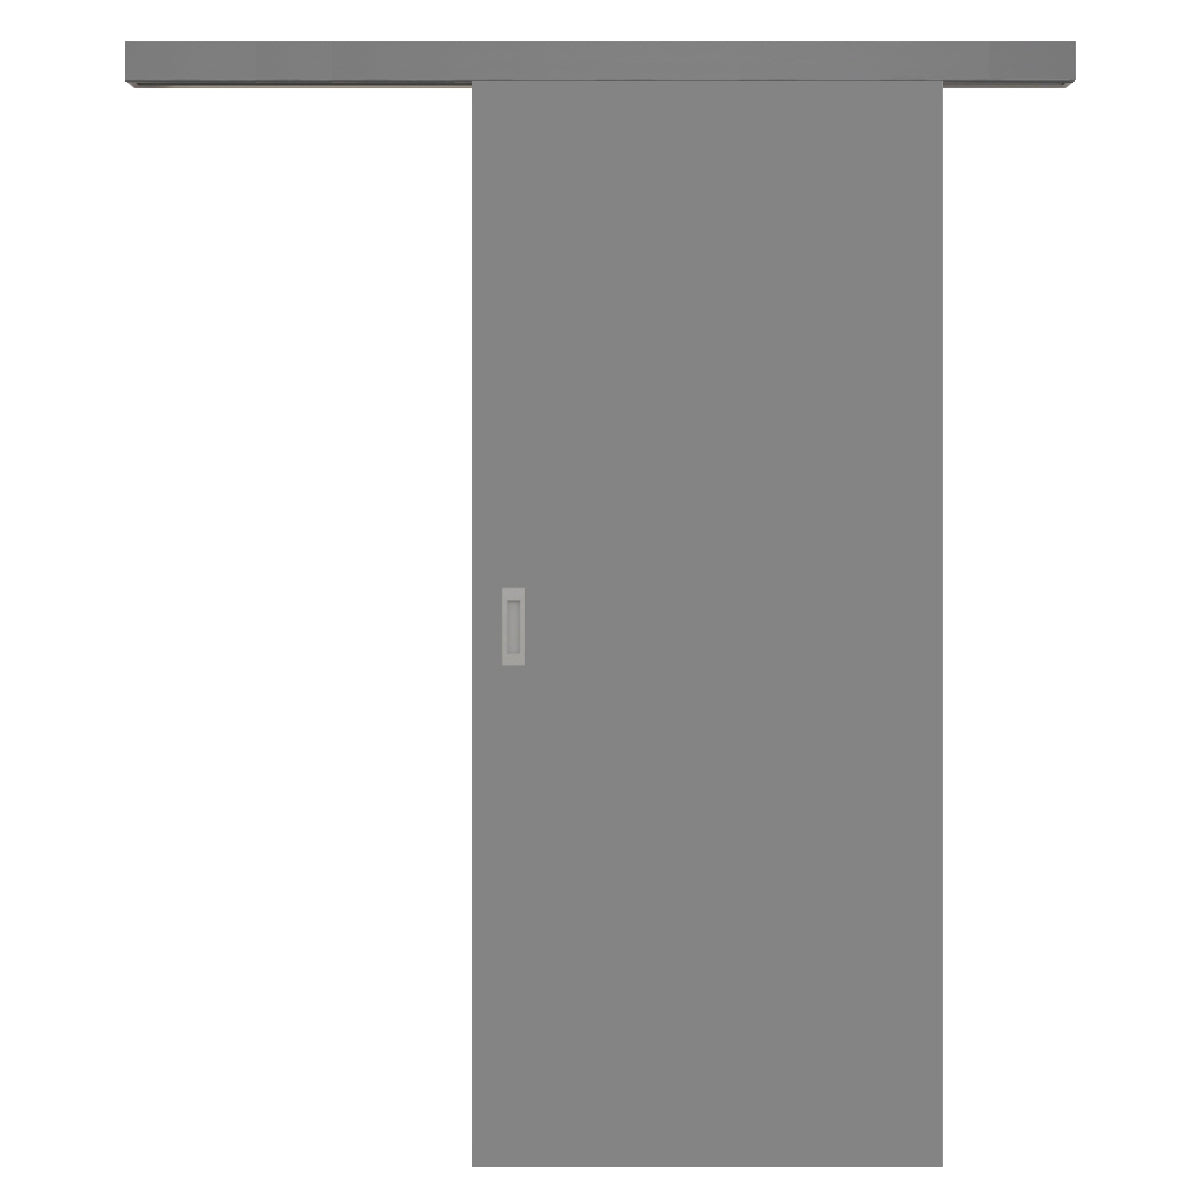 Schiebetür für Set mit grauem Laufkasten grau glatt